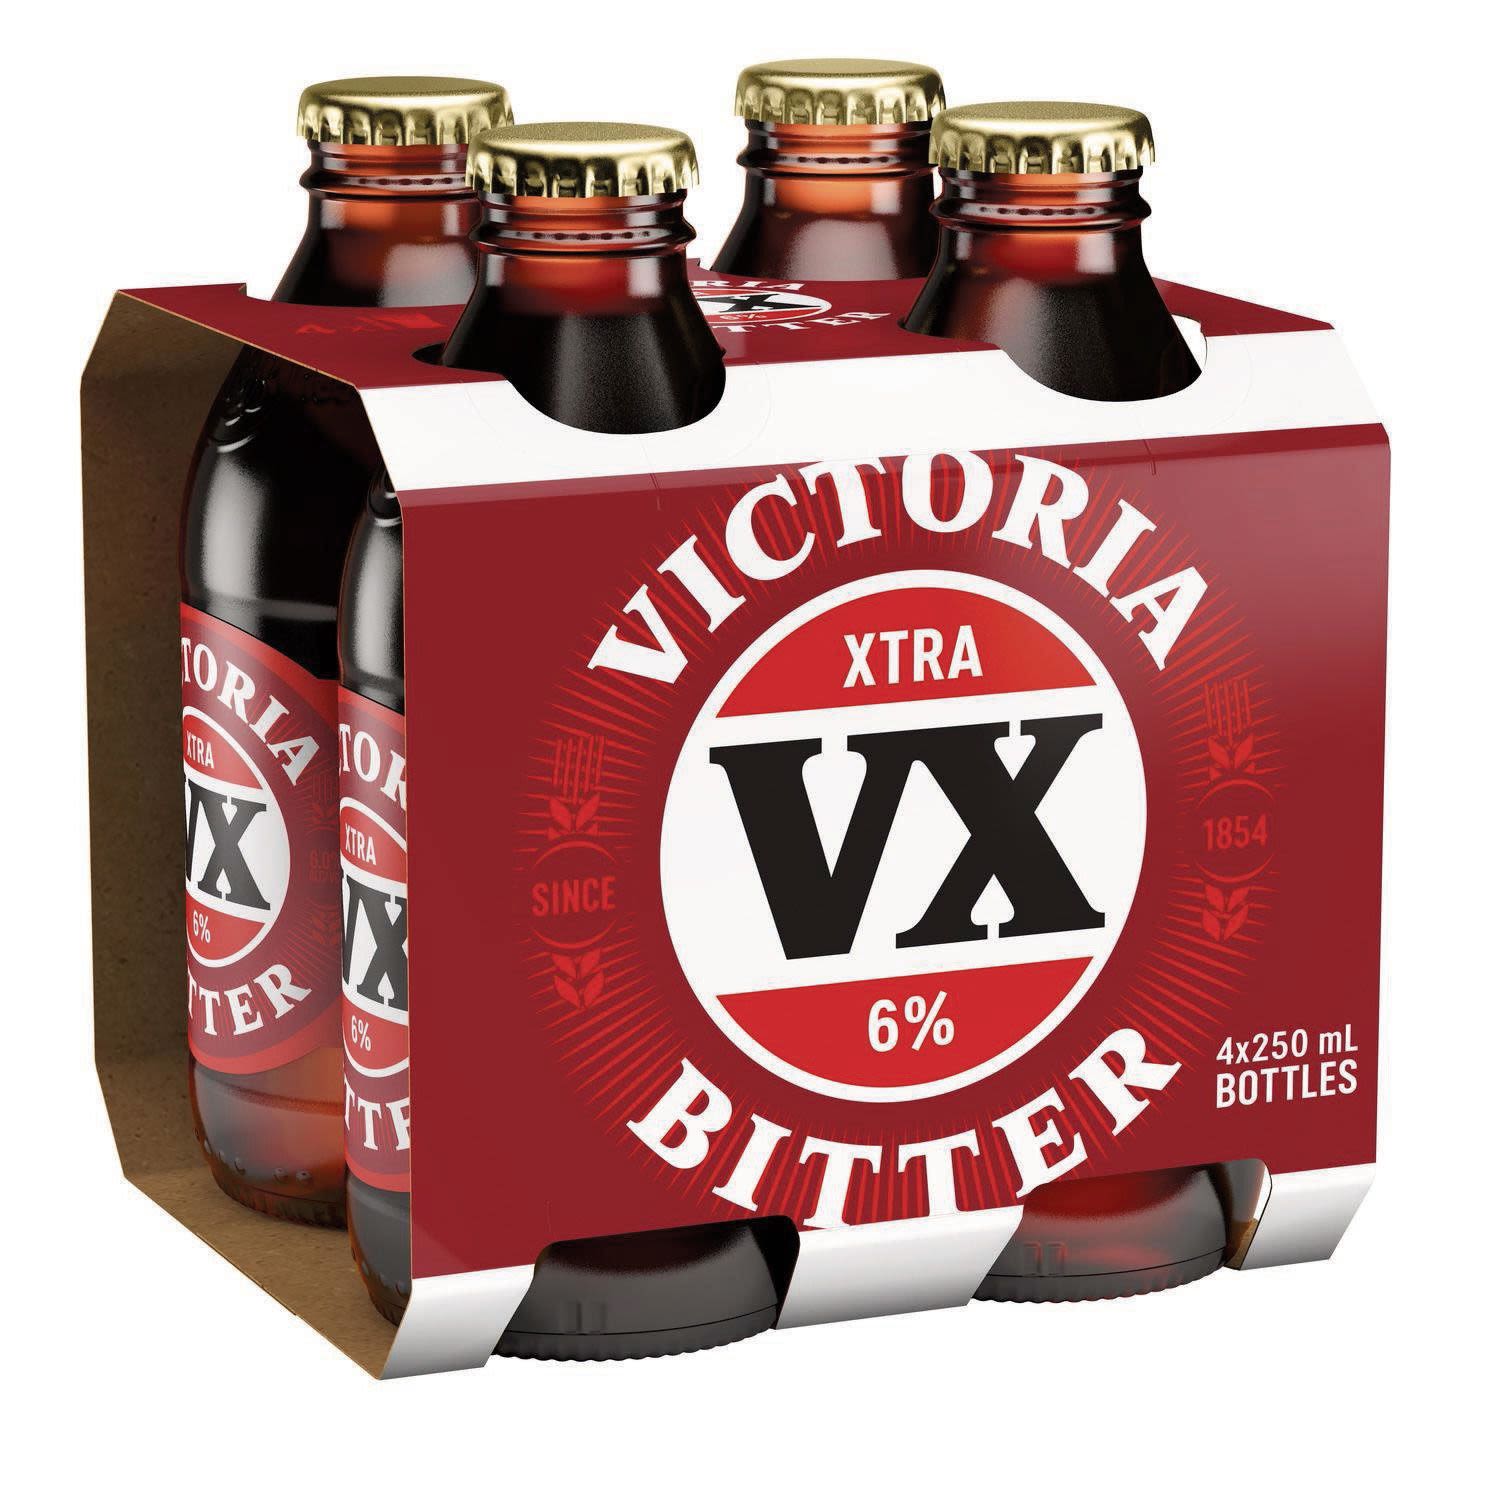 Victoria Bitter VX XTRA Bottle 250mL 4 Pack